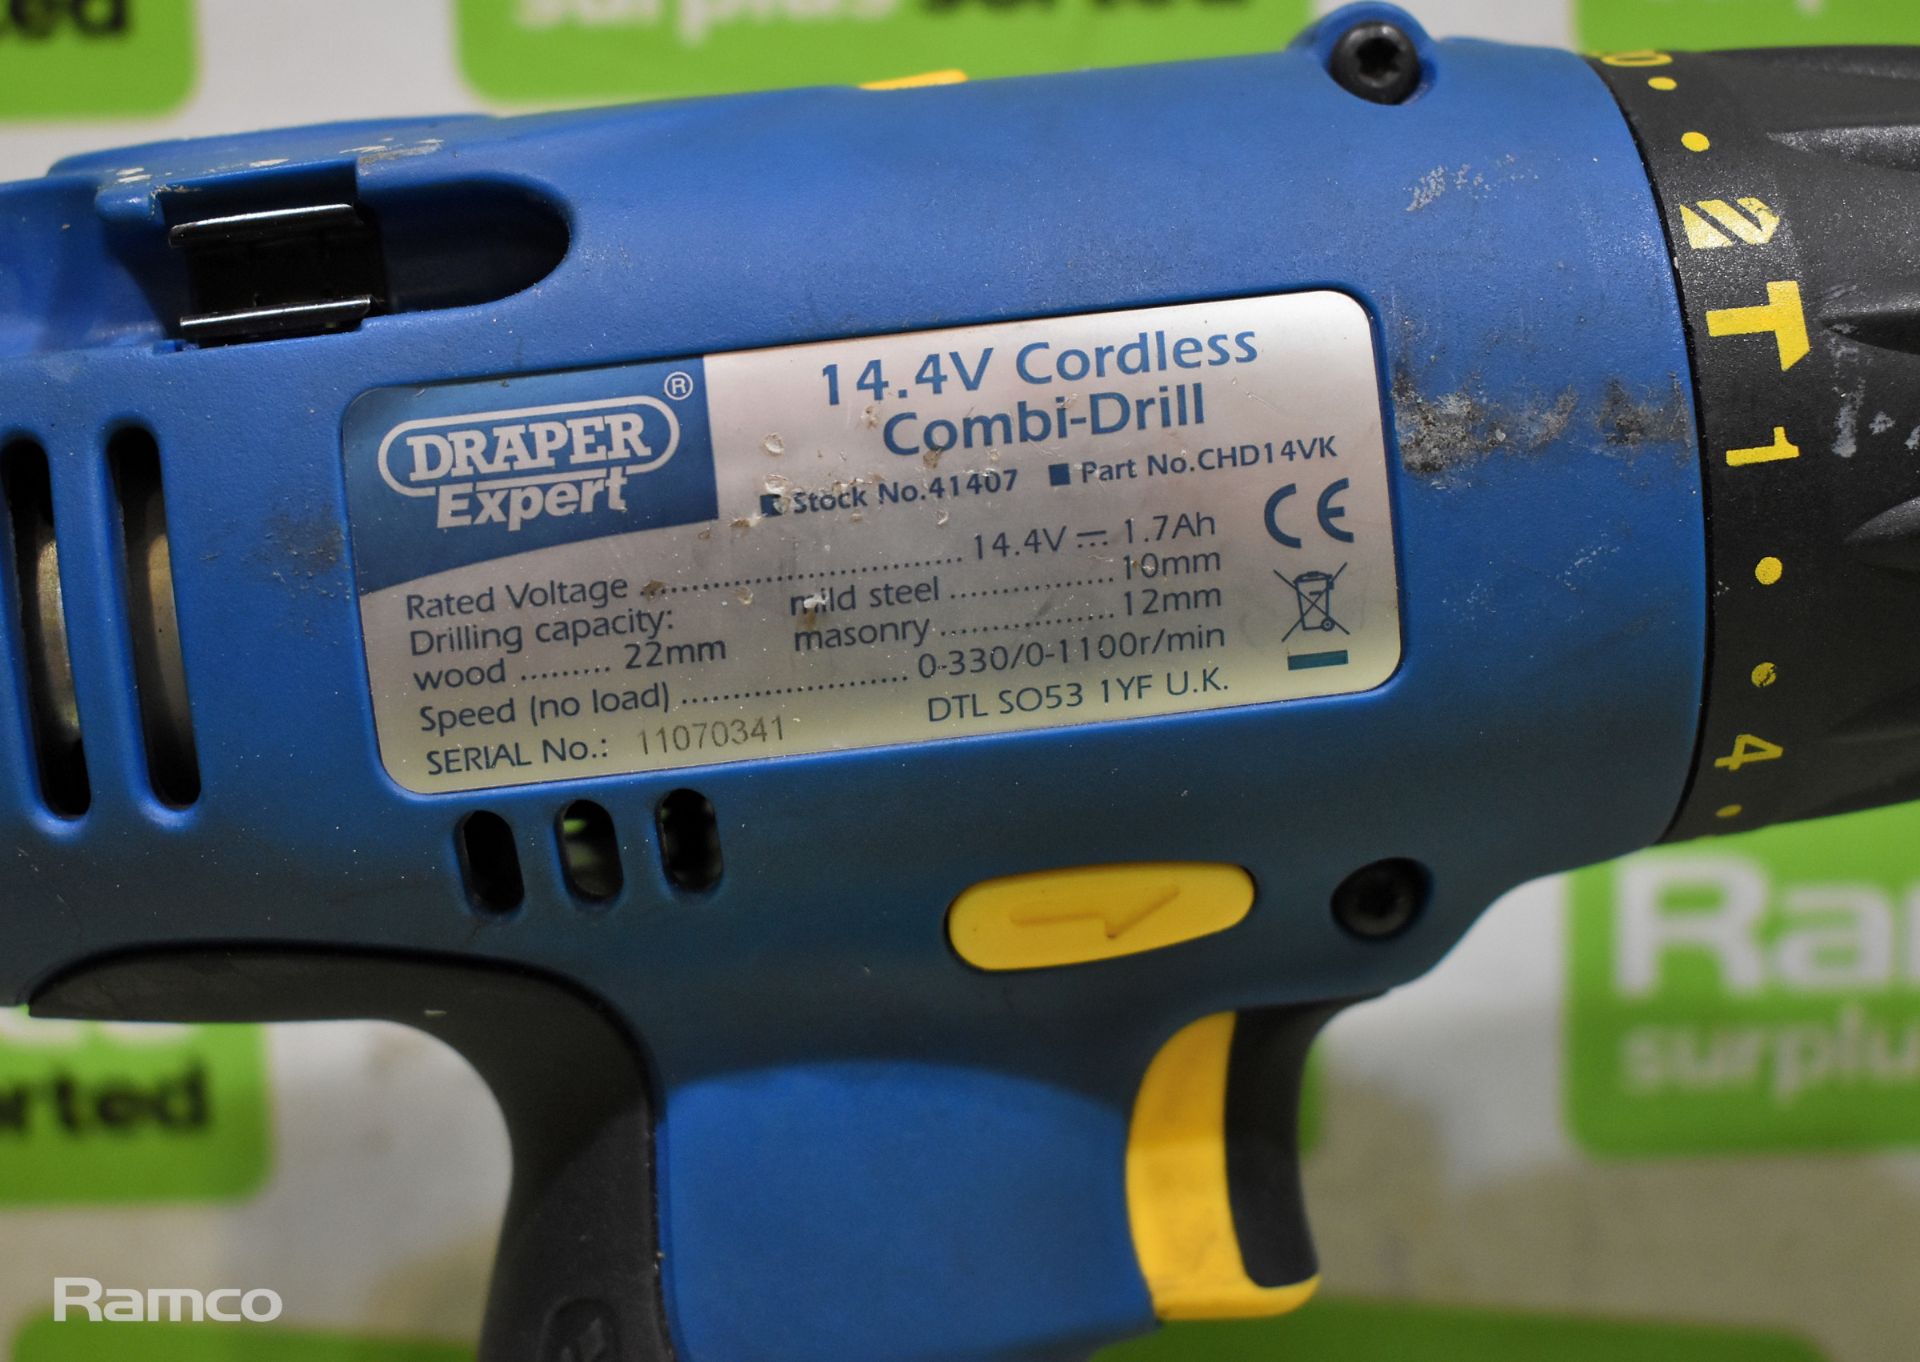 Draper Expert CHD14VK cordless combi-drills - full details in desc. - Image 4 of 8